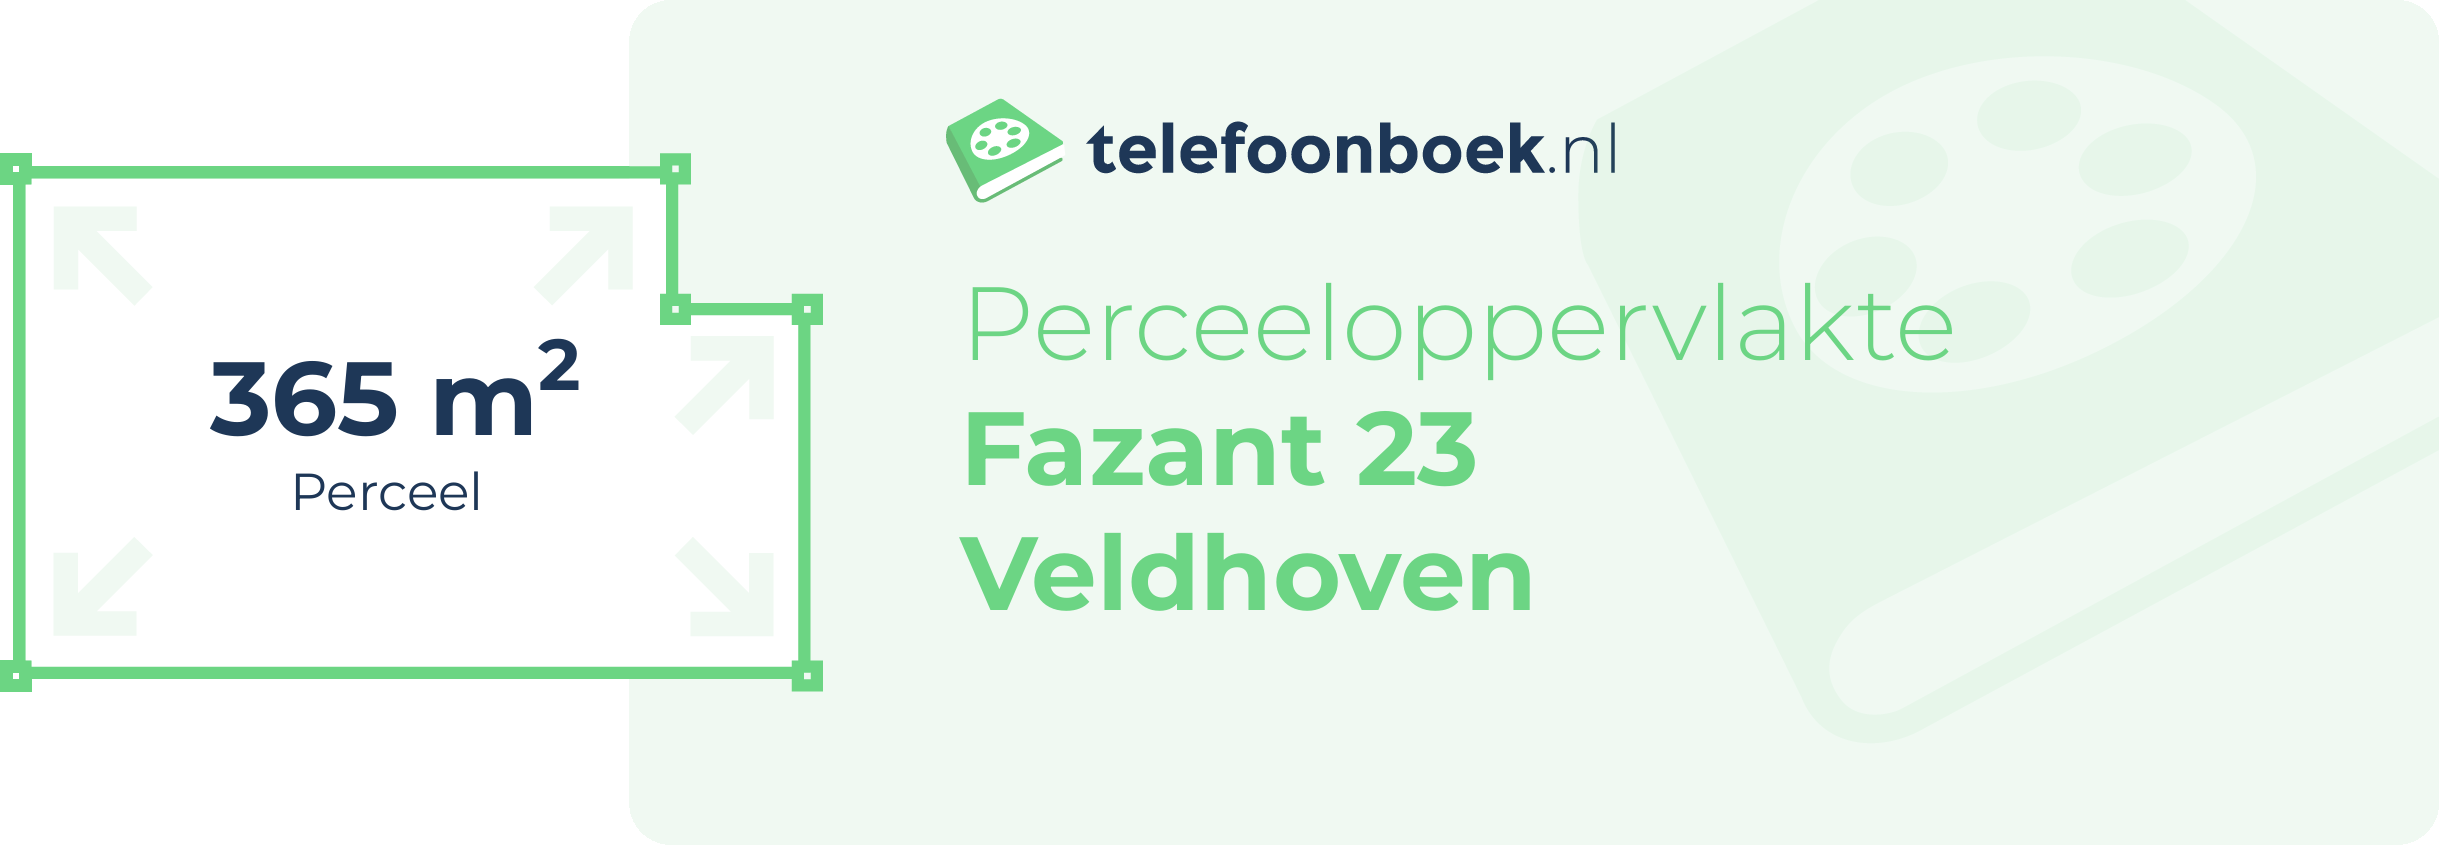 Perceeloppervlakte Fazant 23 Veldhoven